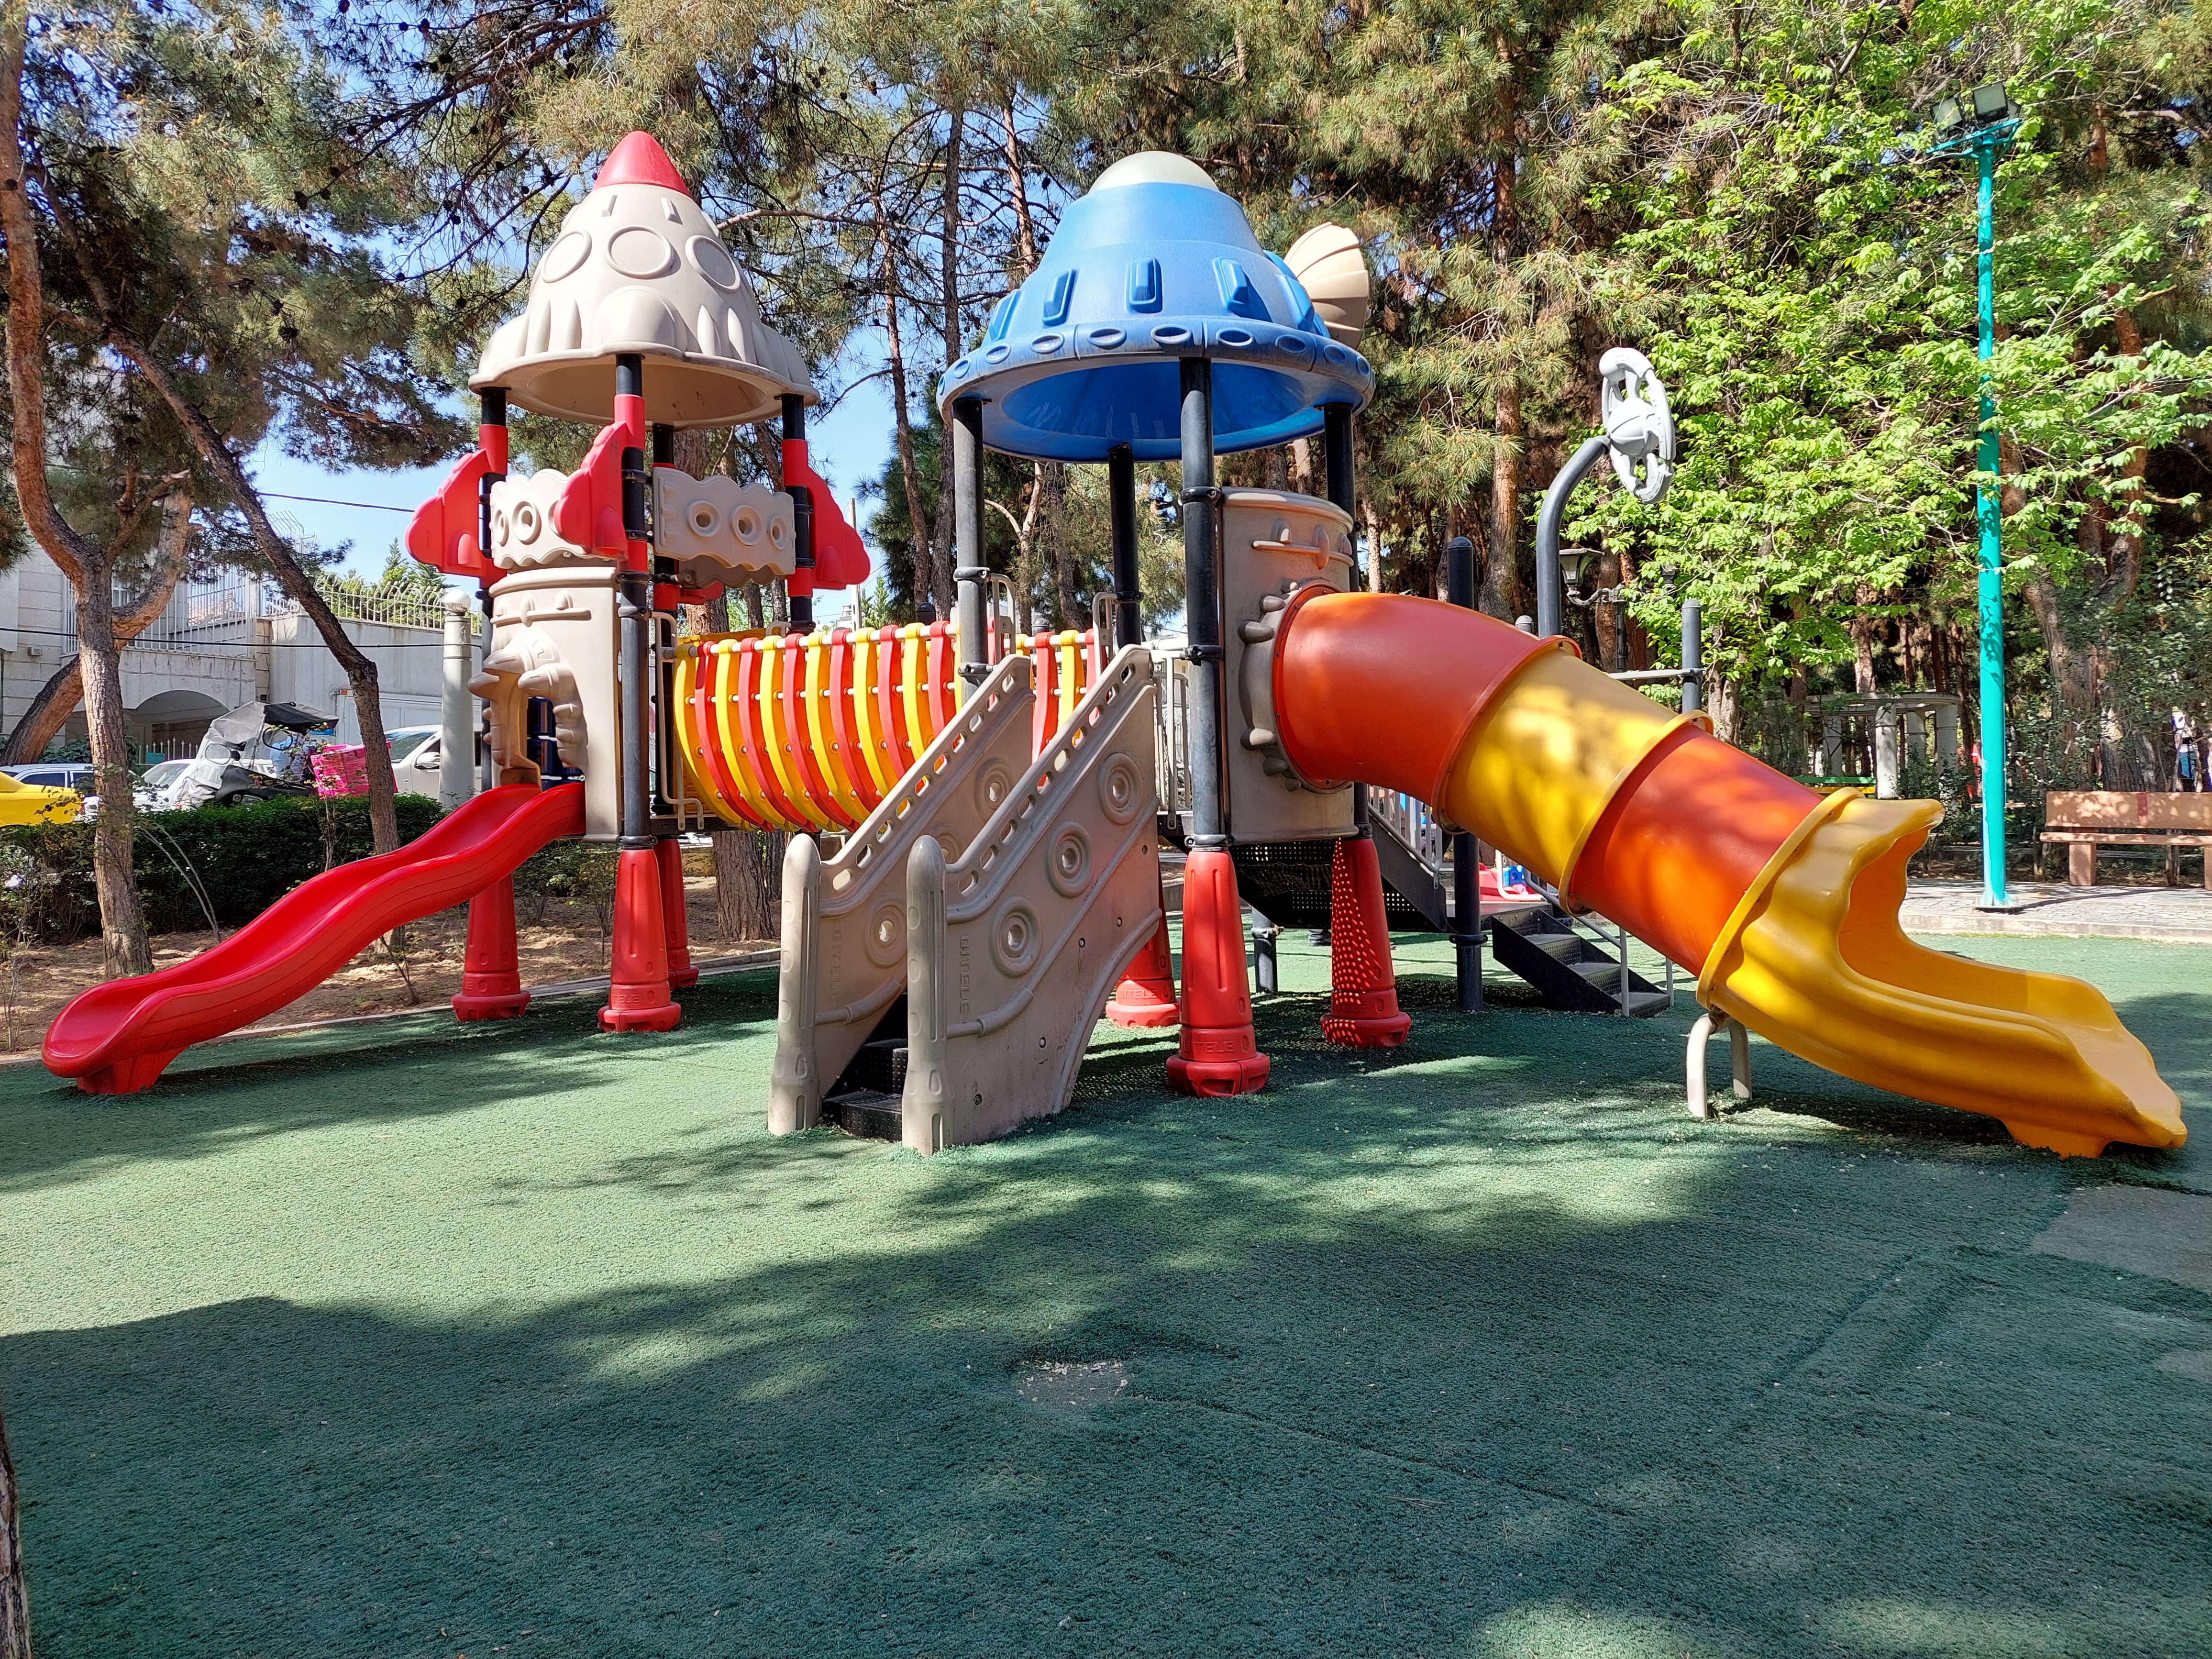 عکس نمونه دوربین واید گلکسی A72 در نور مناسب - زمین بازی کودک در پارک صبا خیابان جردن